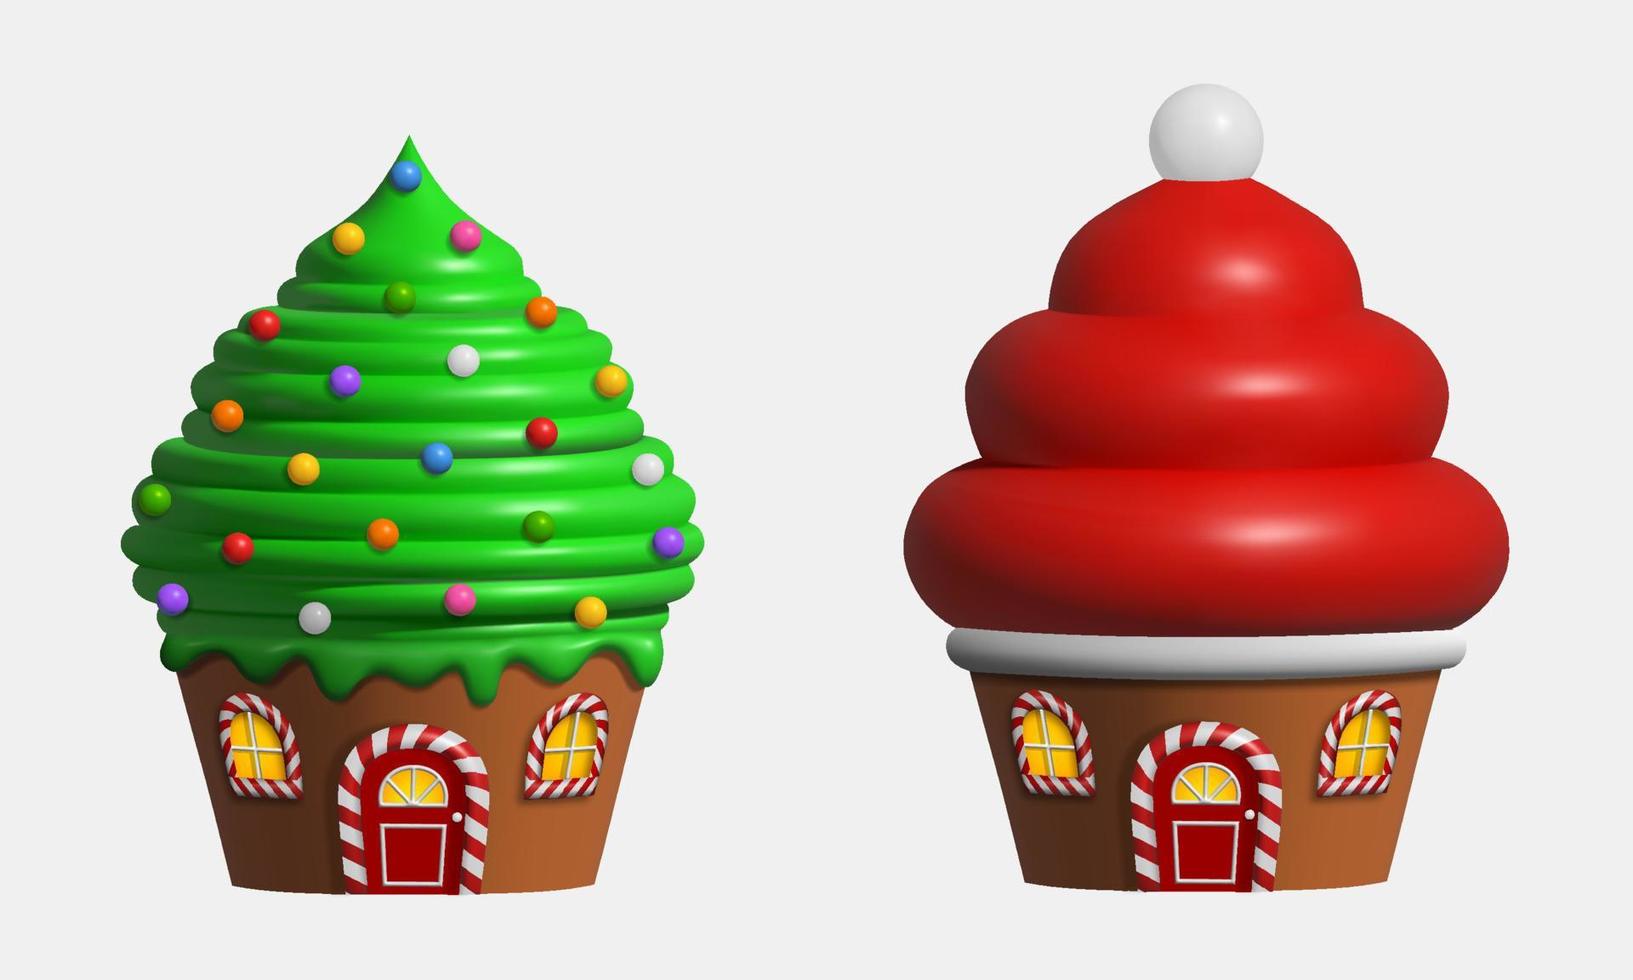 Weihnachten 3d Cupcakes. Süßigkeiten Landschaftselemente. isoliertes Cupcake-förmiges Haus vektor